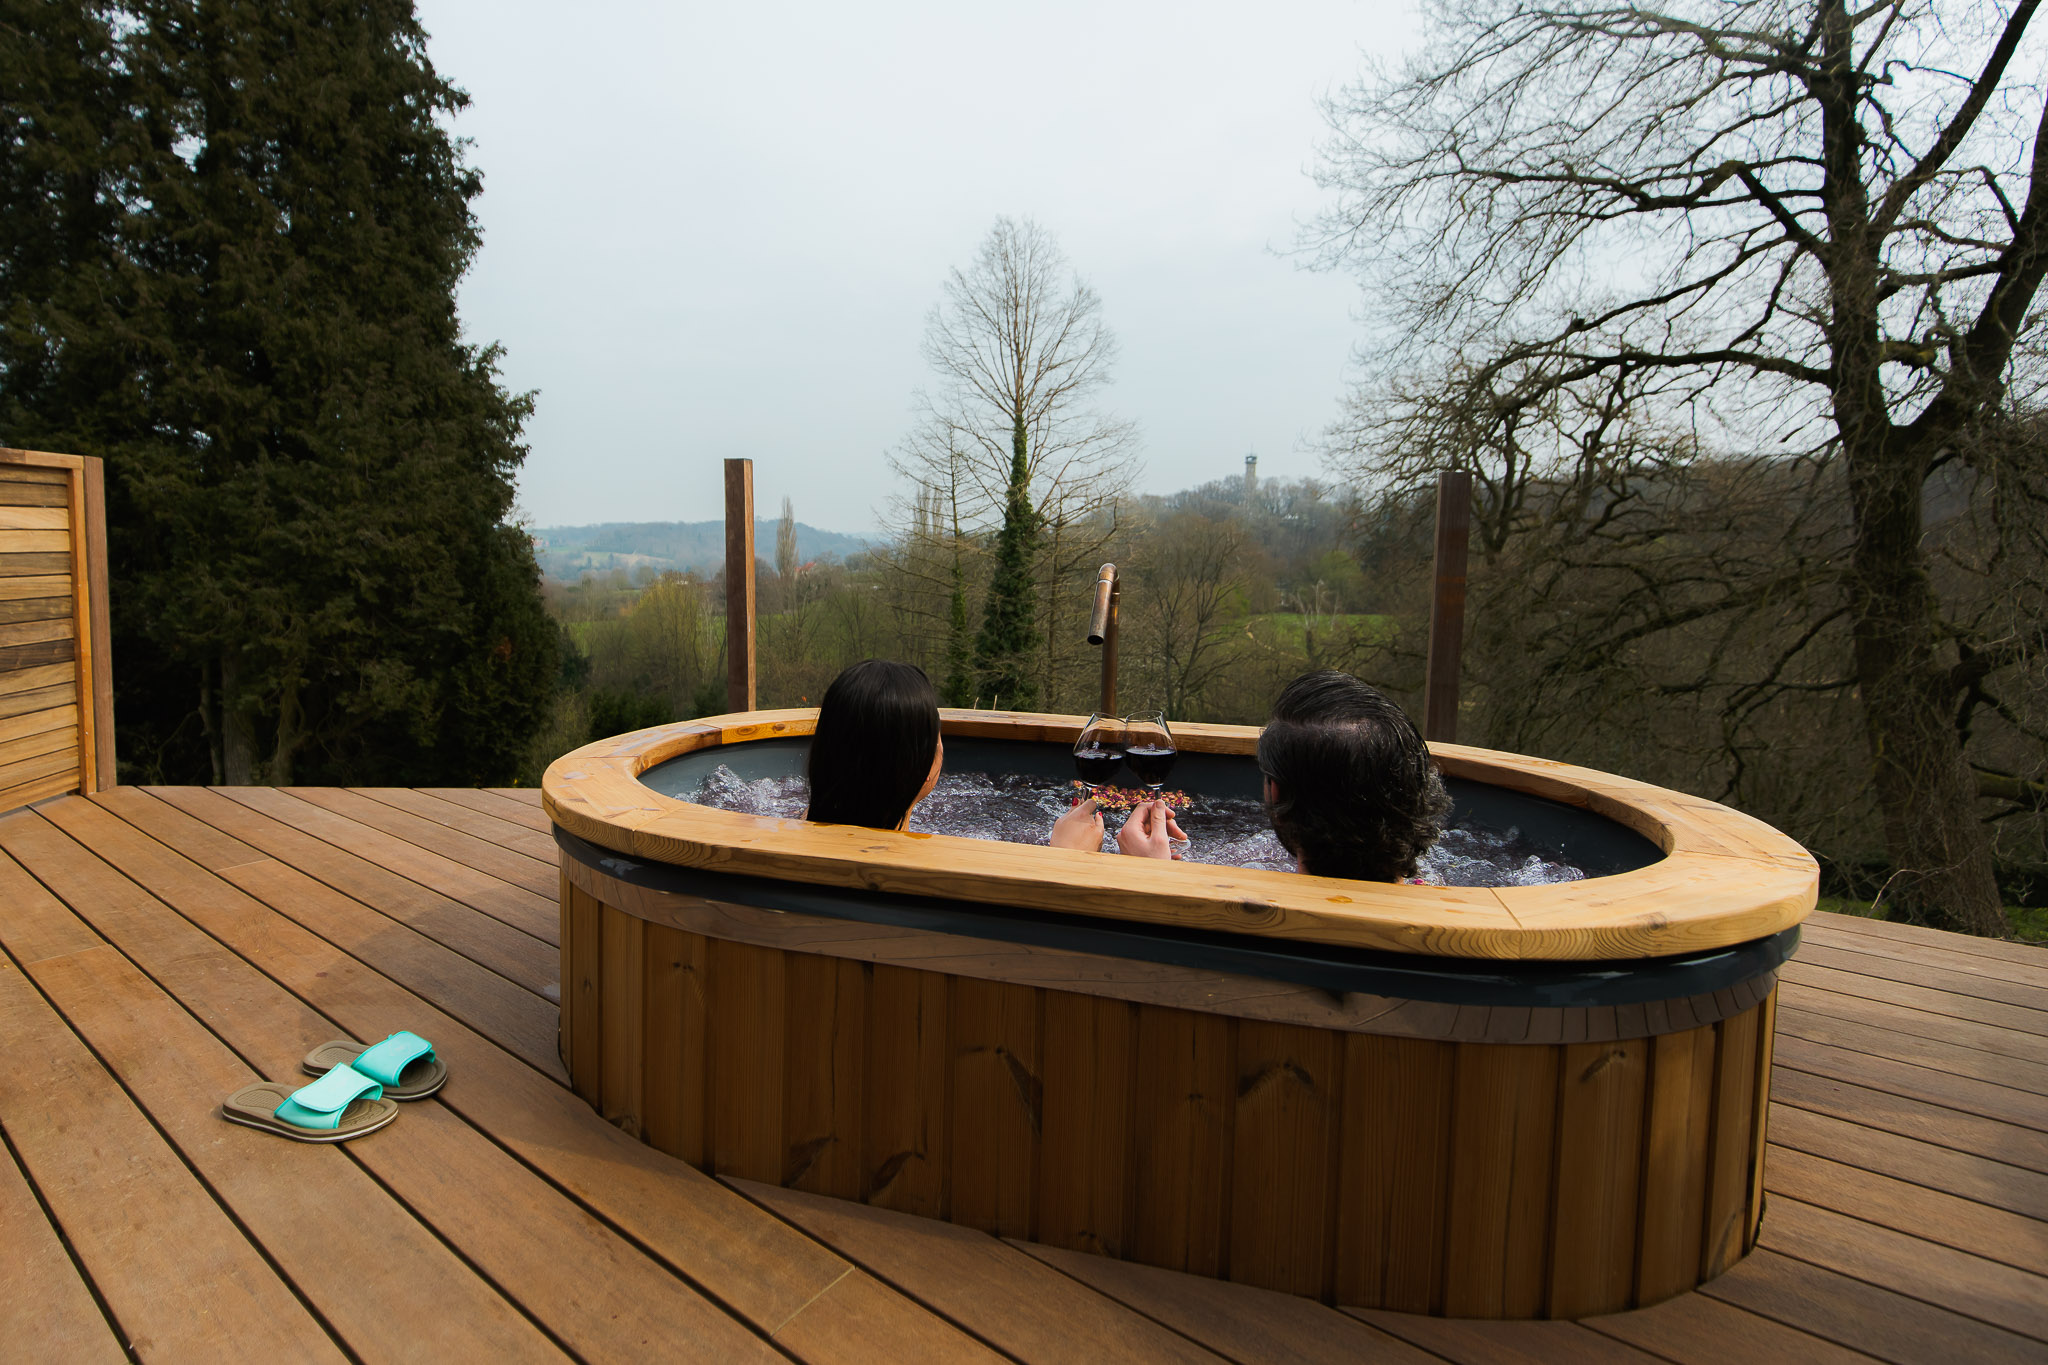 Koppel geniet van het bubbelende wijnbad met uitzicht over het limburgse heuvelland.